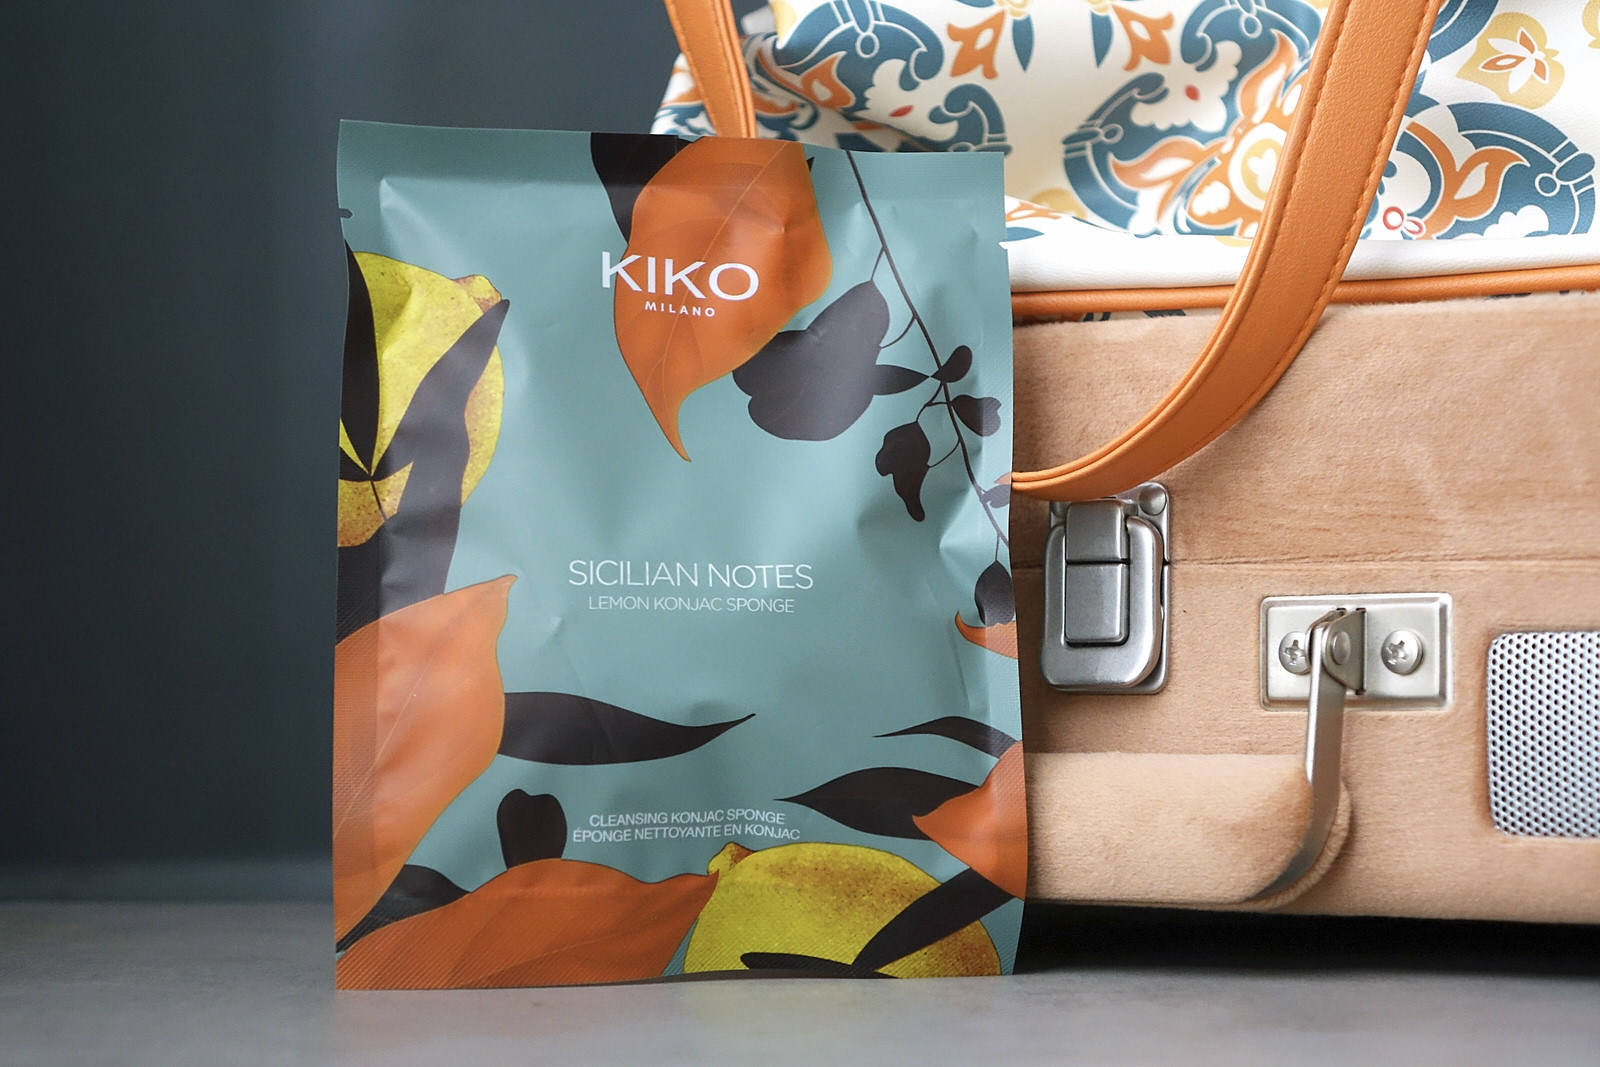 La collection makeup "Sicilian Notes" de Kiko